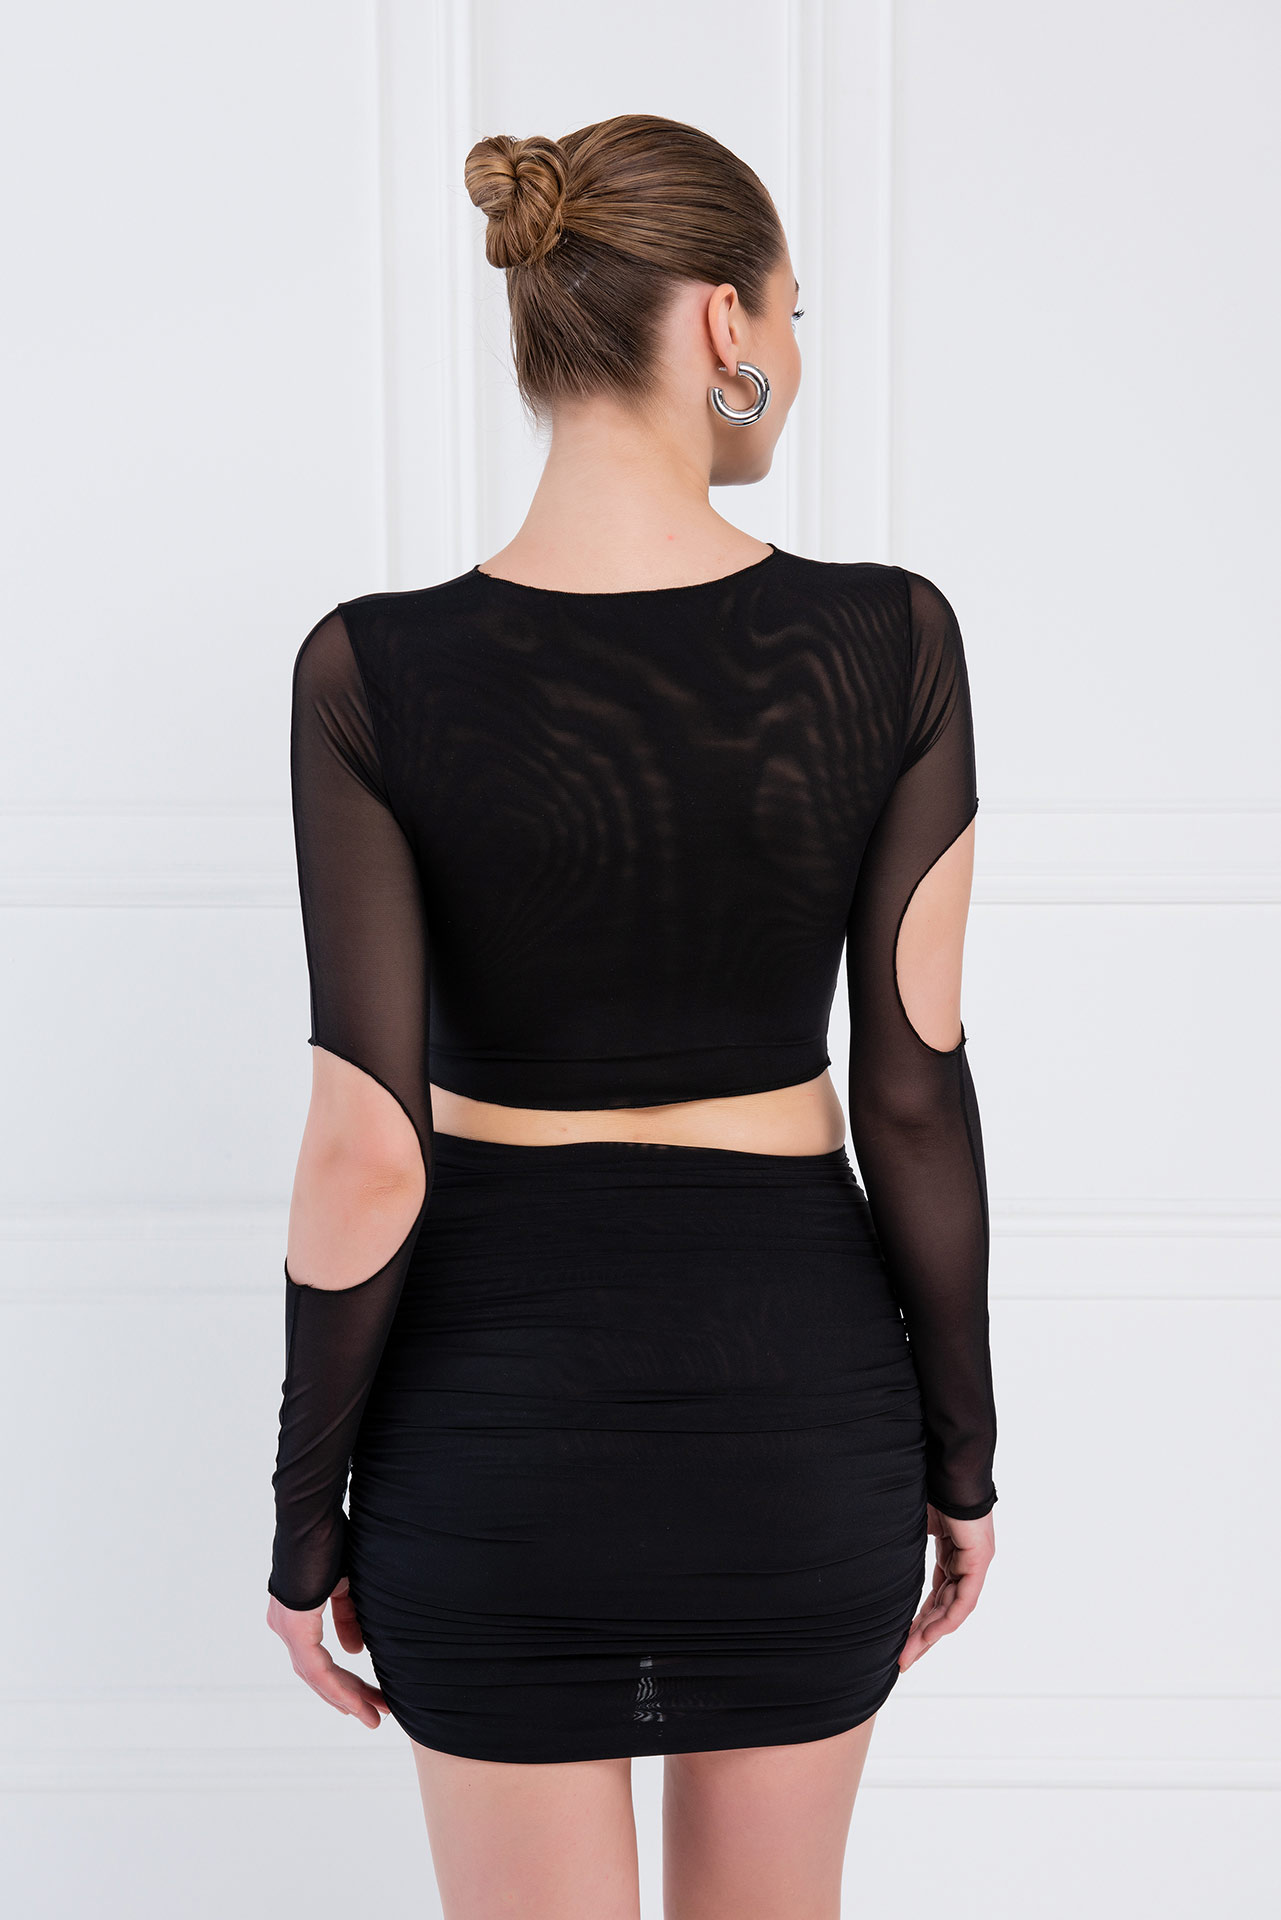 Wholesale Self-Tie Black Mesh Top & Skirt Set